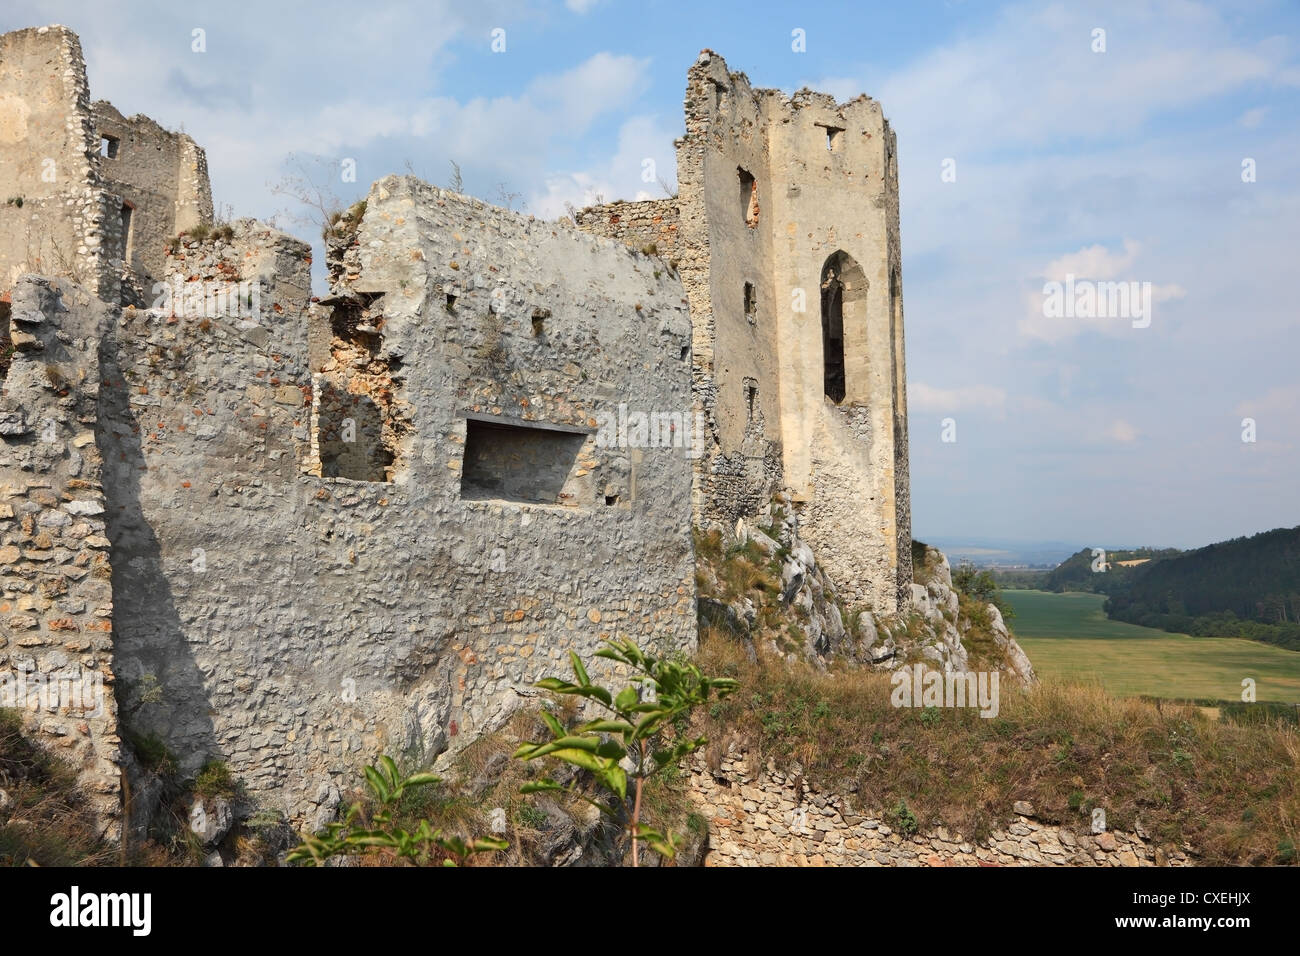 Forteresse médiévale en ruine Banque D'Images